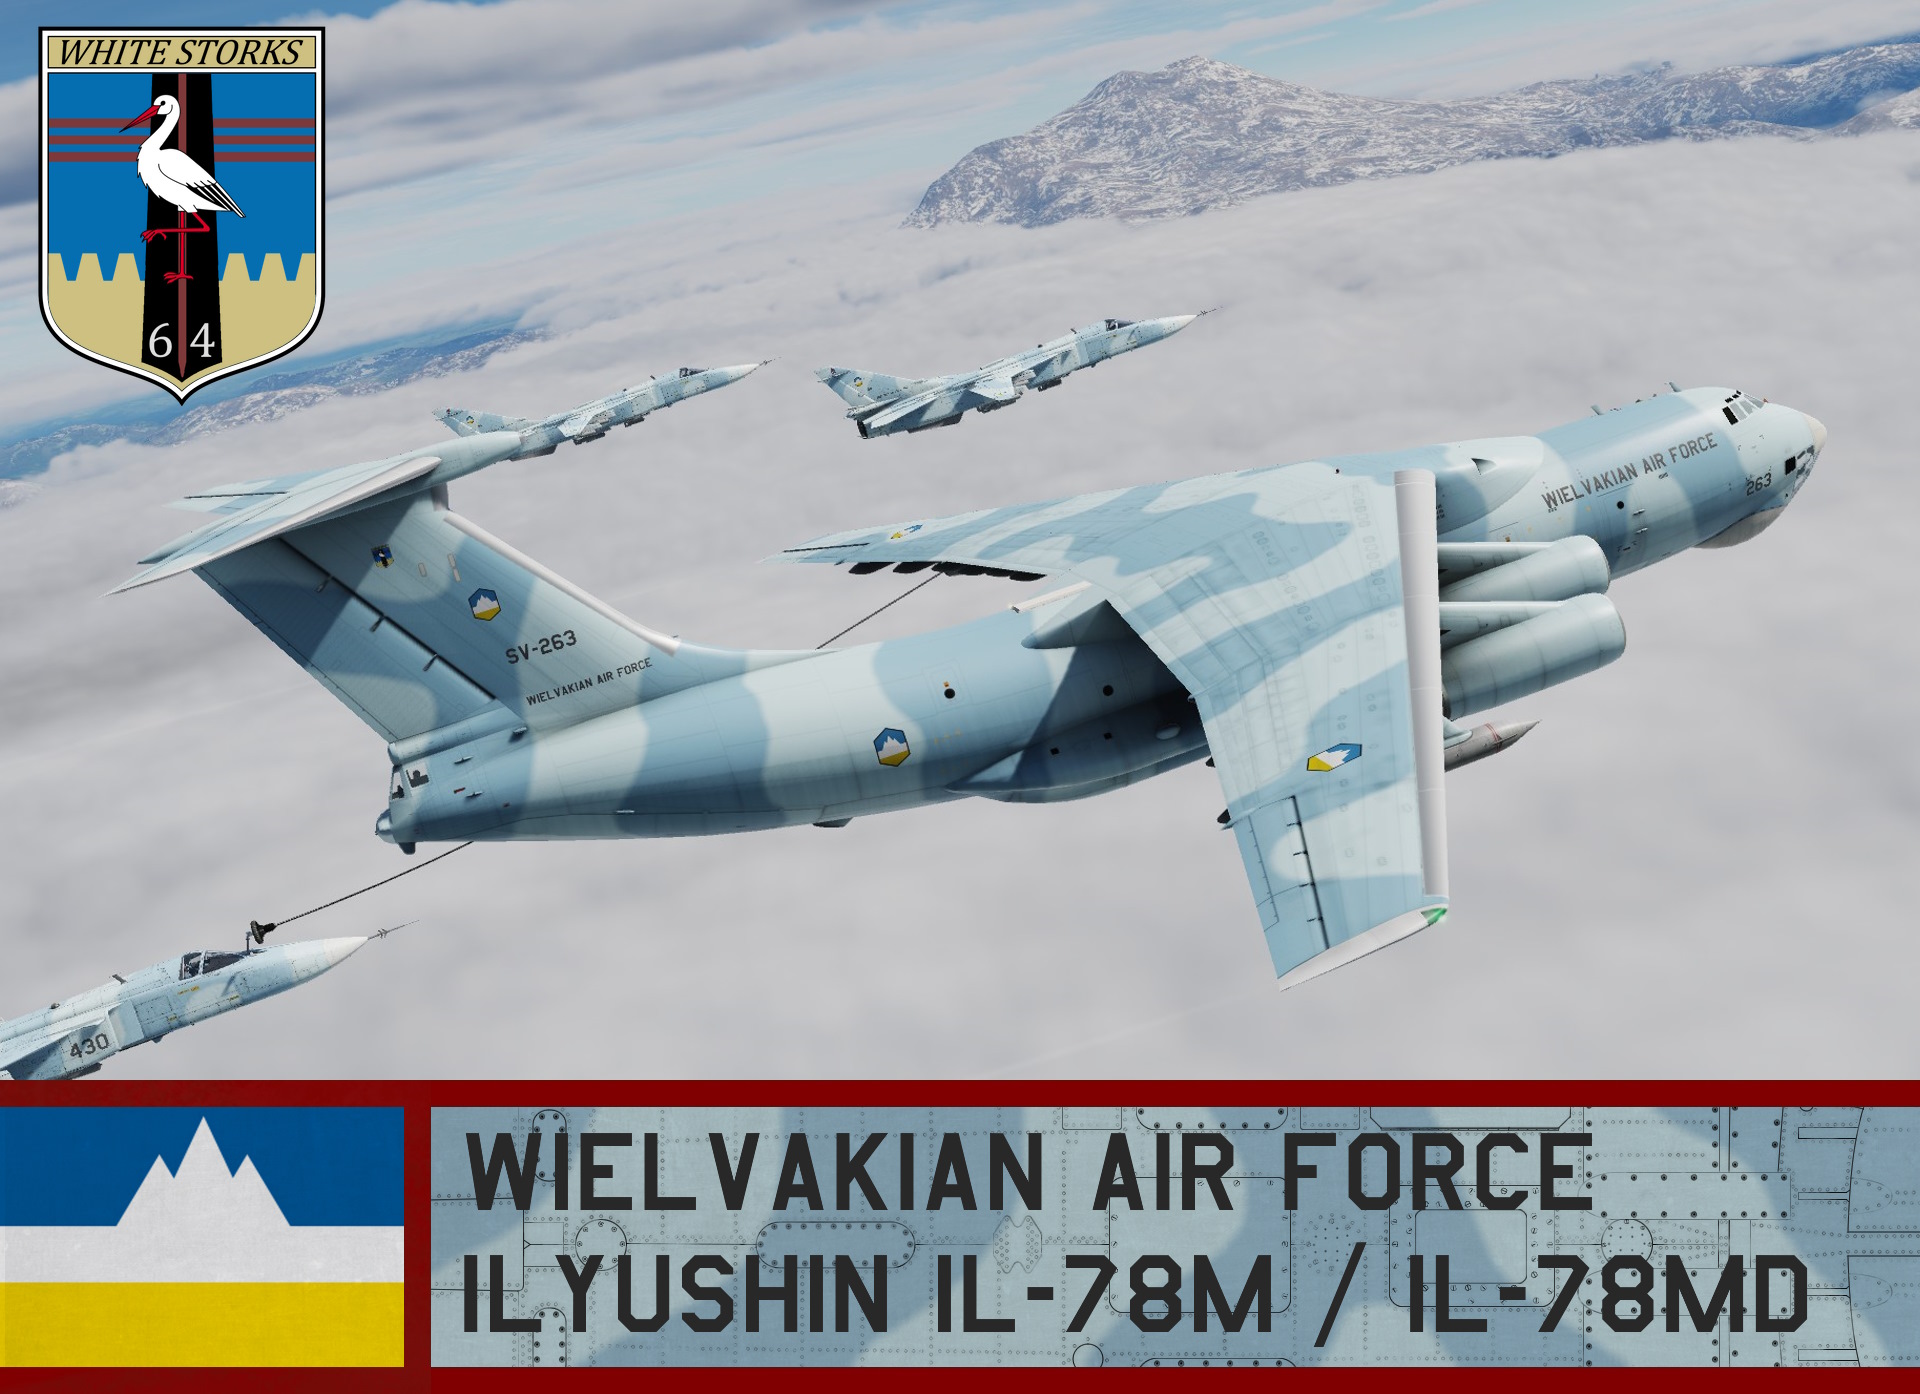 Wielvakian Air Force, IL-76MD / IL-78M - Ace Combat